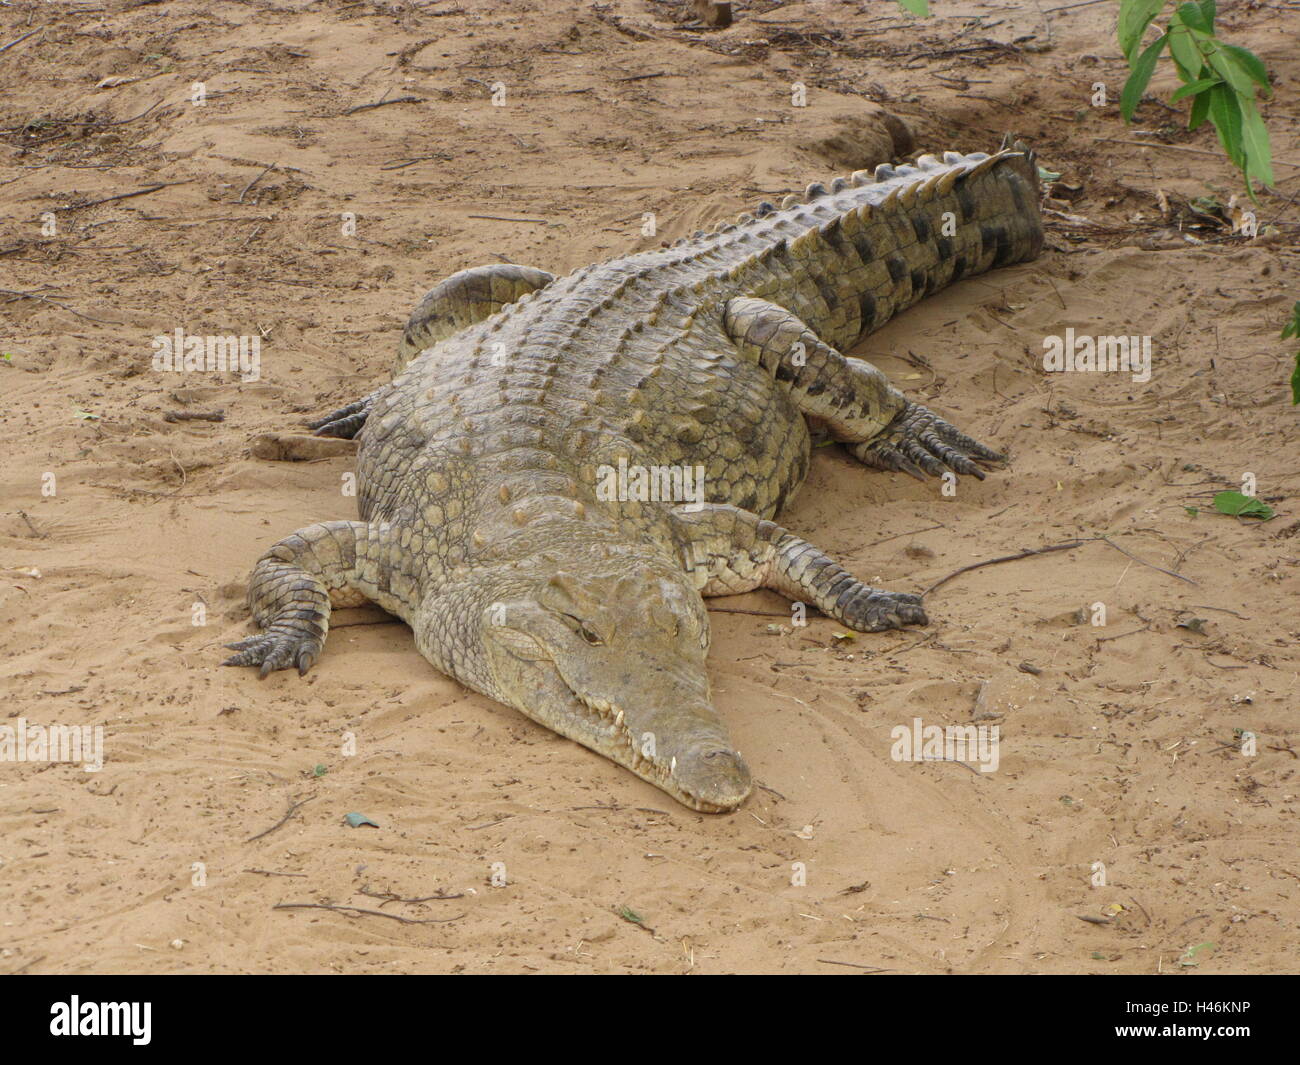 Un crocodile sur la plage montre de la rivière galana dans Kenya Tsavo East National Park. Banque D'Images